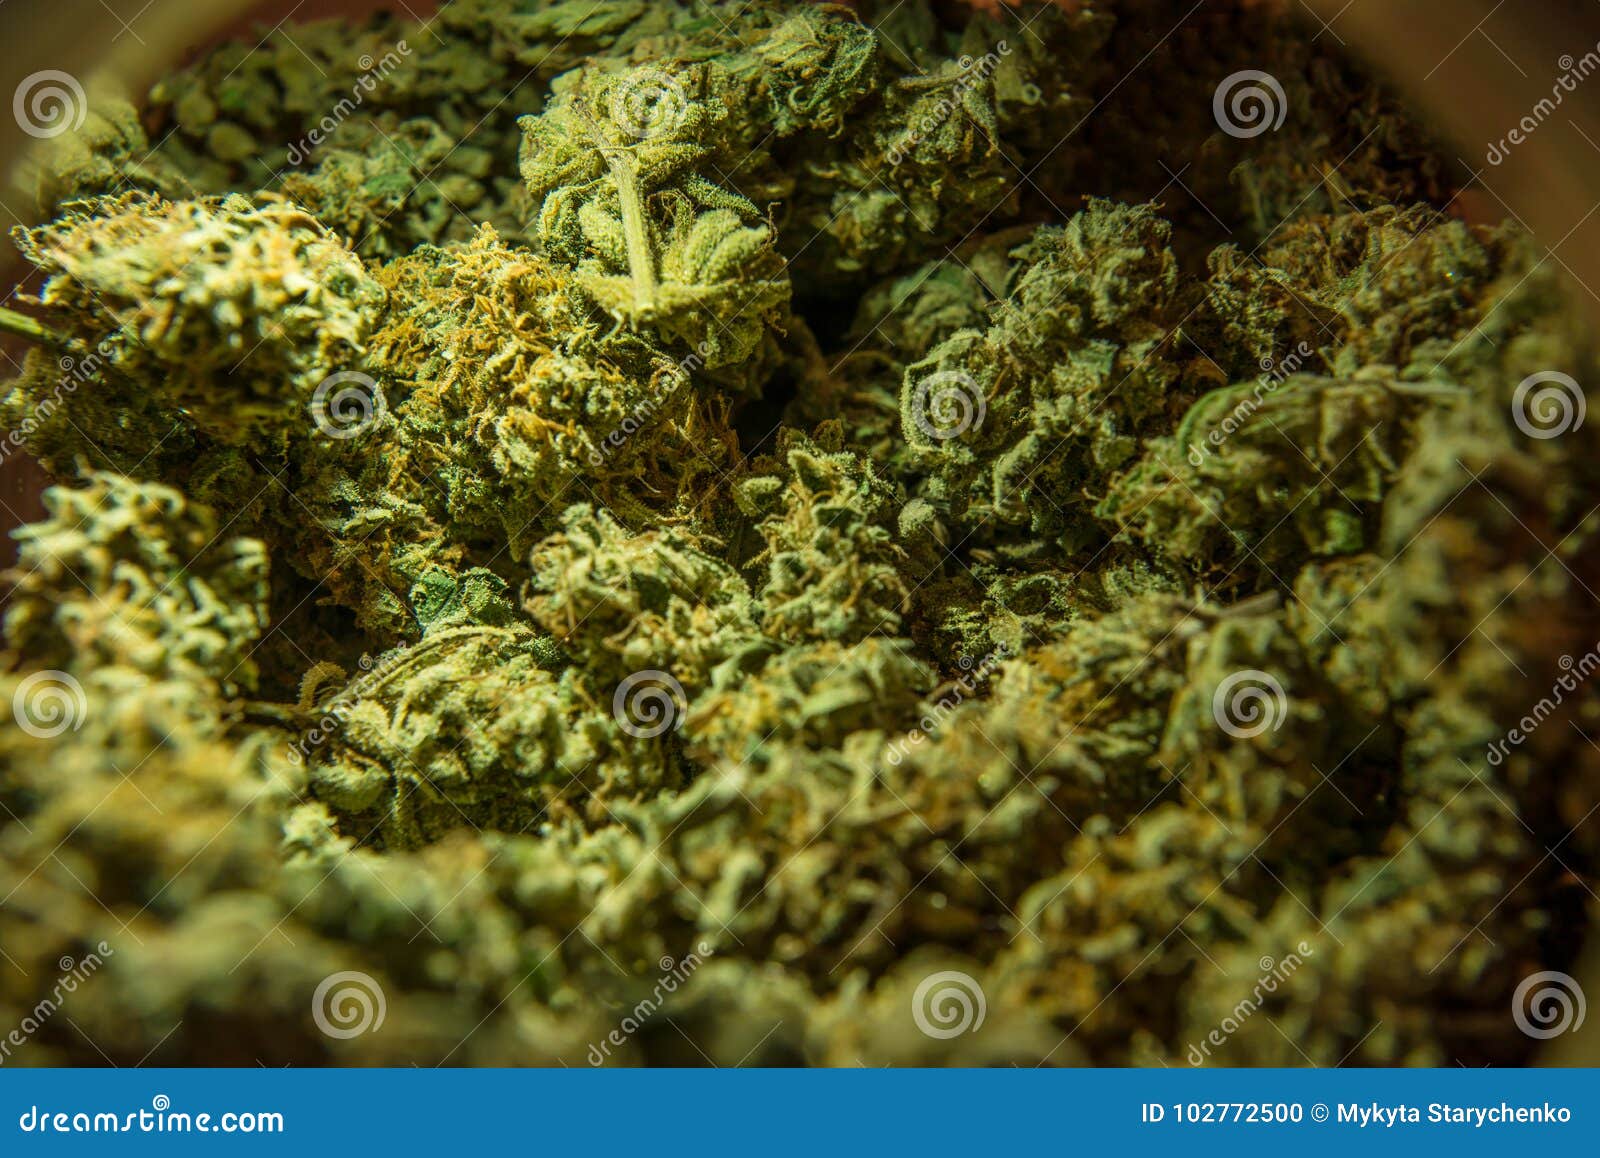 Фото головок марихуаны купить конопляные семена очищенные